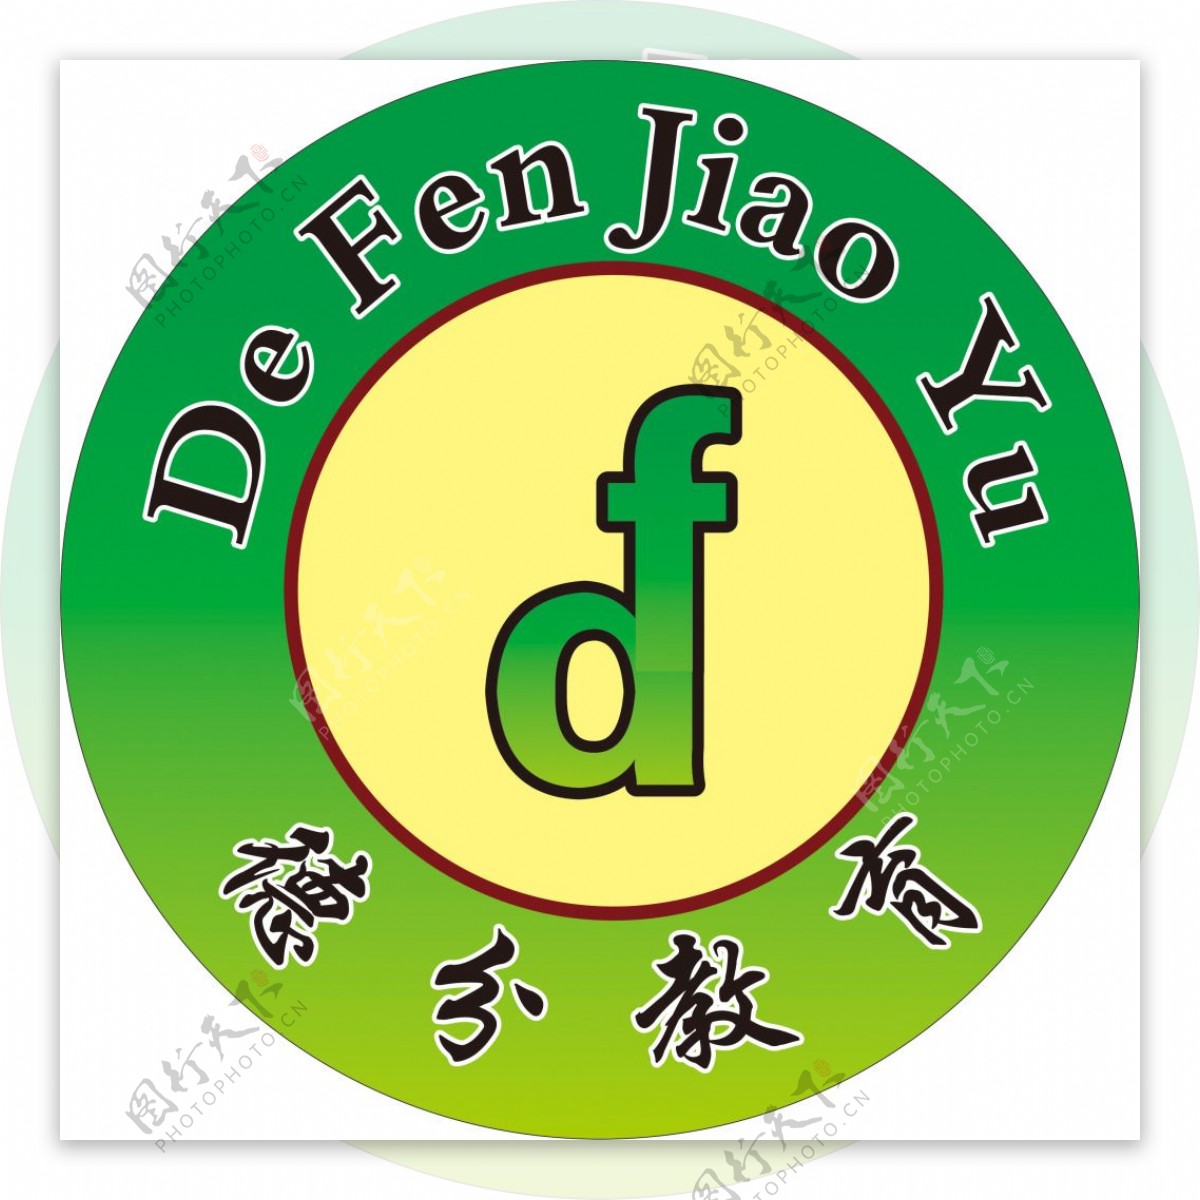 德分教育logo